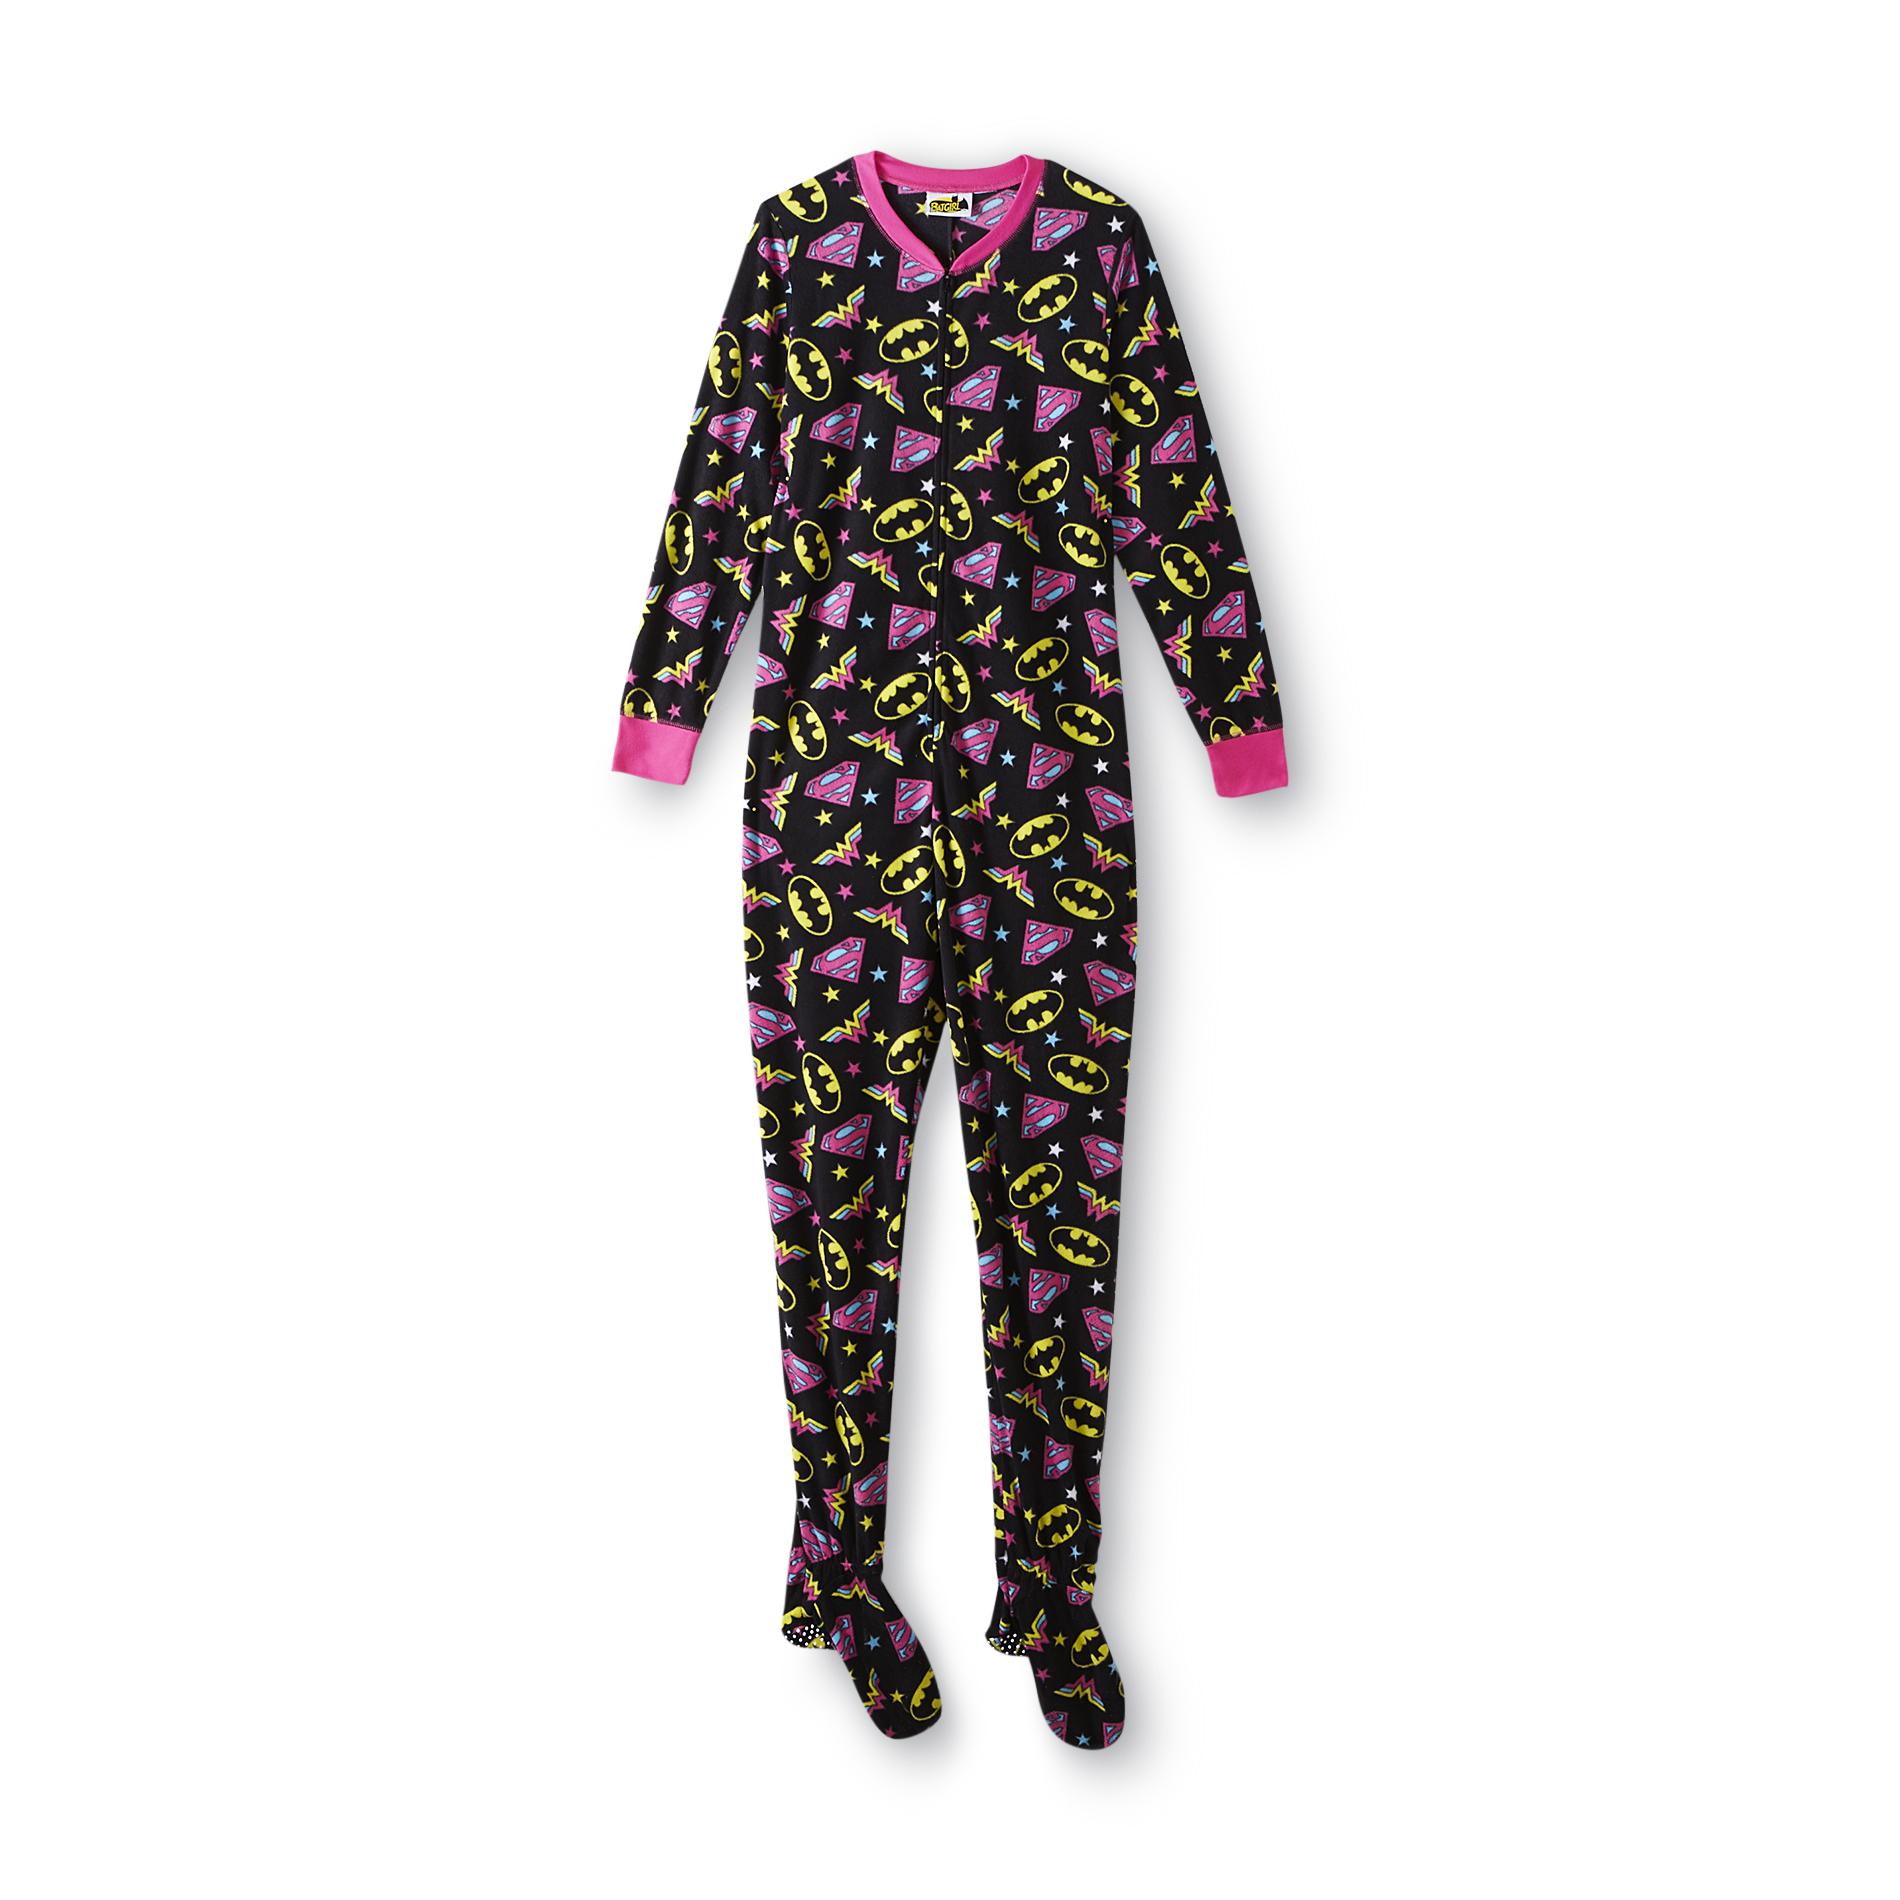 one piece footed pajamas